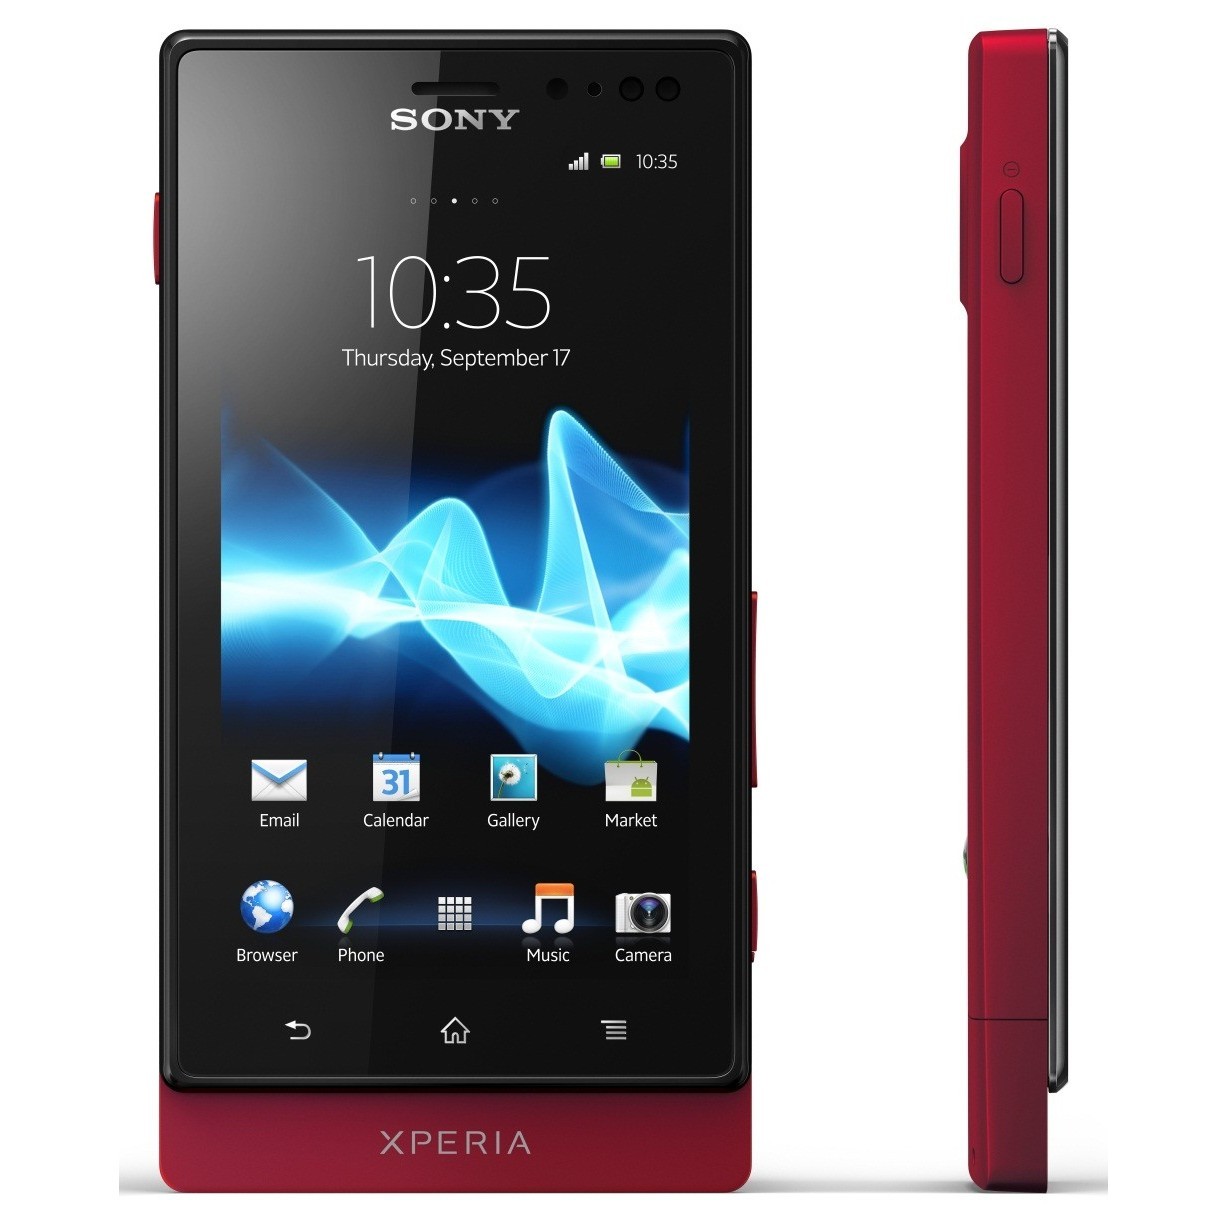 Sony xperia 128gb. Sony Xperia mt27i. Sony Xperia sola. Sony Xperia sola mt27i. Sony Ericsson Xperia sola mt27i.